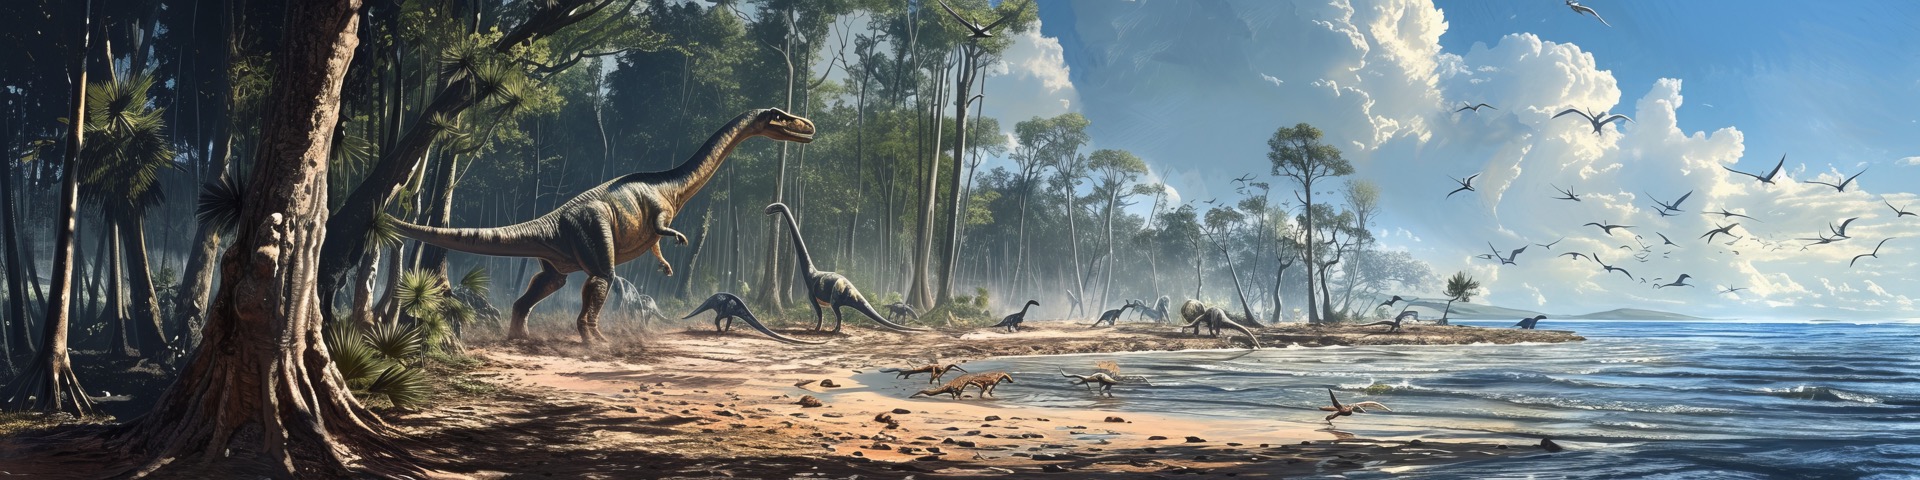 Il y a 200 millions d'années, de grands dinosaures ont laissé des traces dans le sol vaseux de ce qui est aujourd'hui la plage du Veillon. © Bilas AI, Adobe Stock